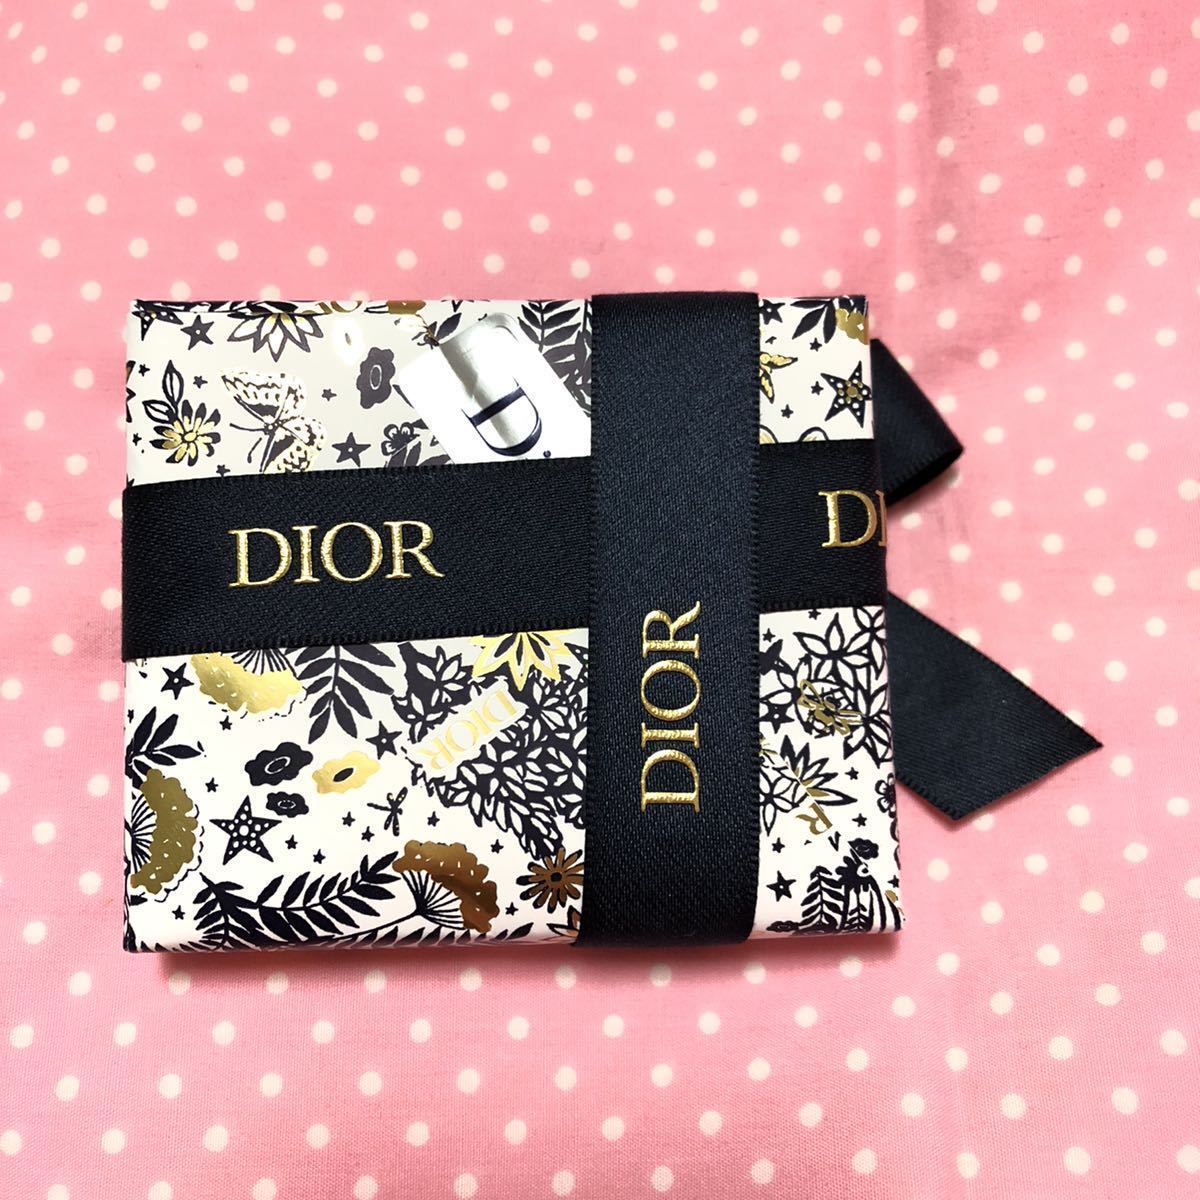 ディオール サンク クルール クチュール 469 アトリエドレ 2021 限定 サンククルール 限定品 Dior